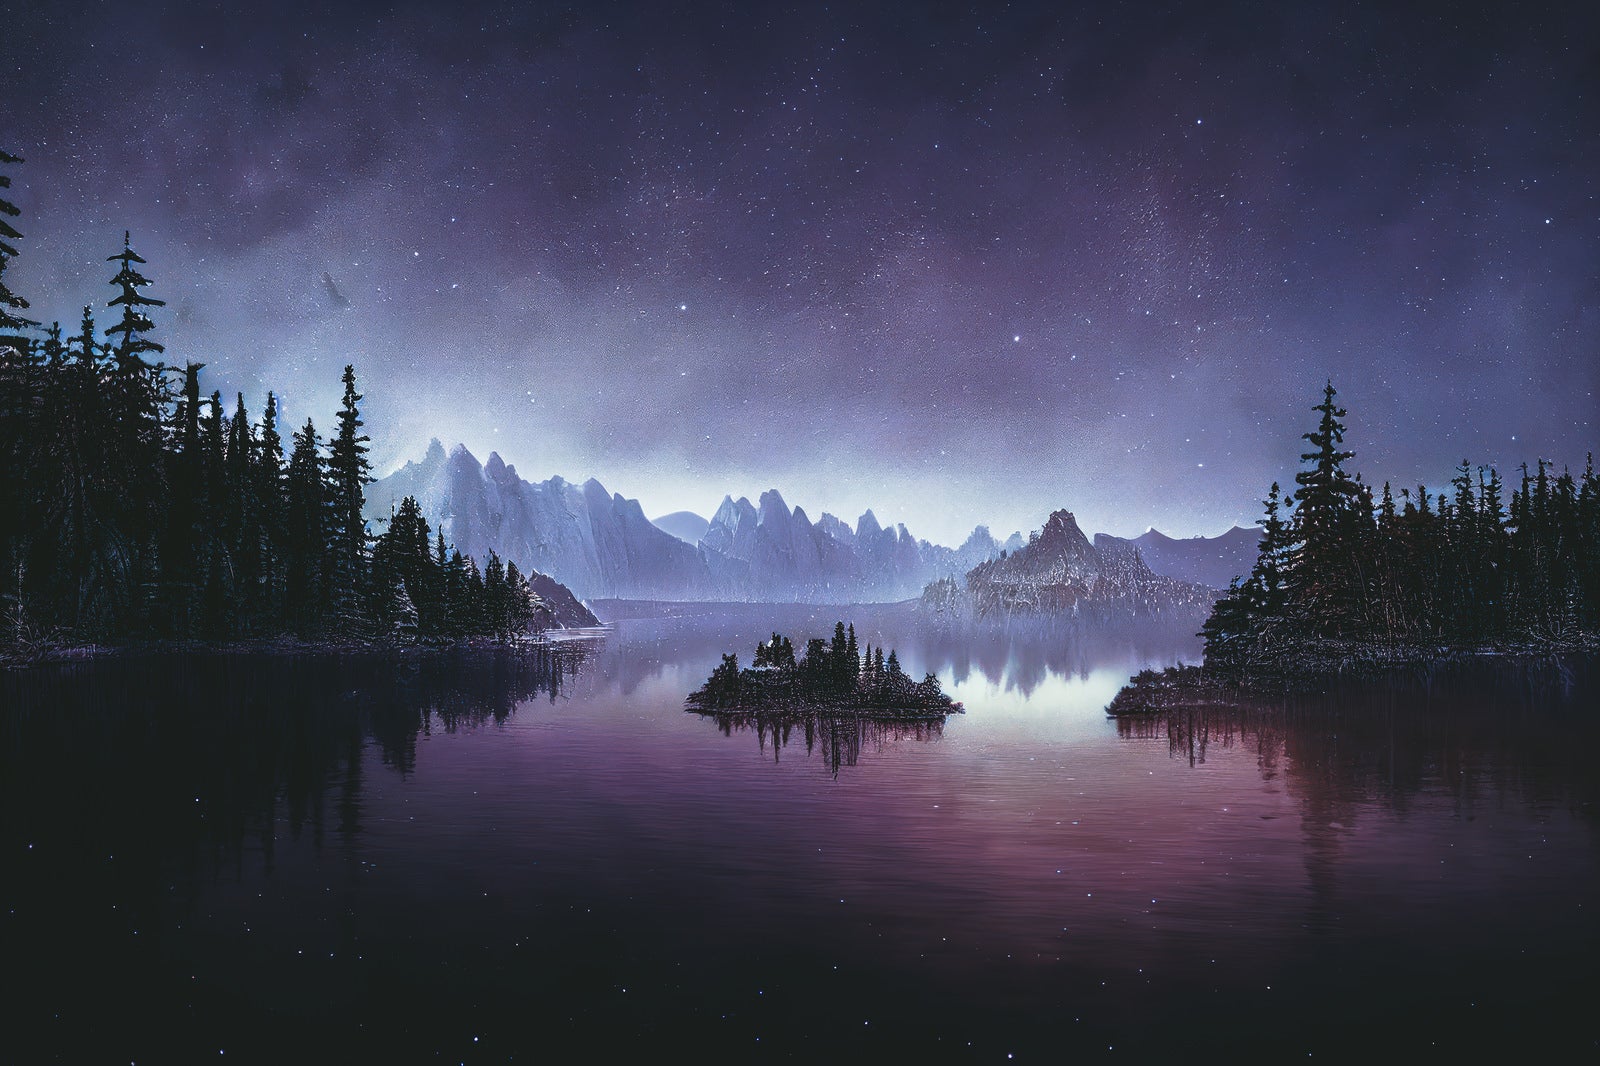 「湖畔から見る星空の秩序」の写真